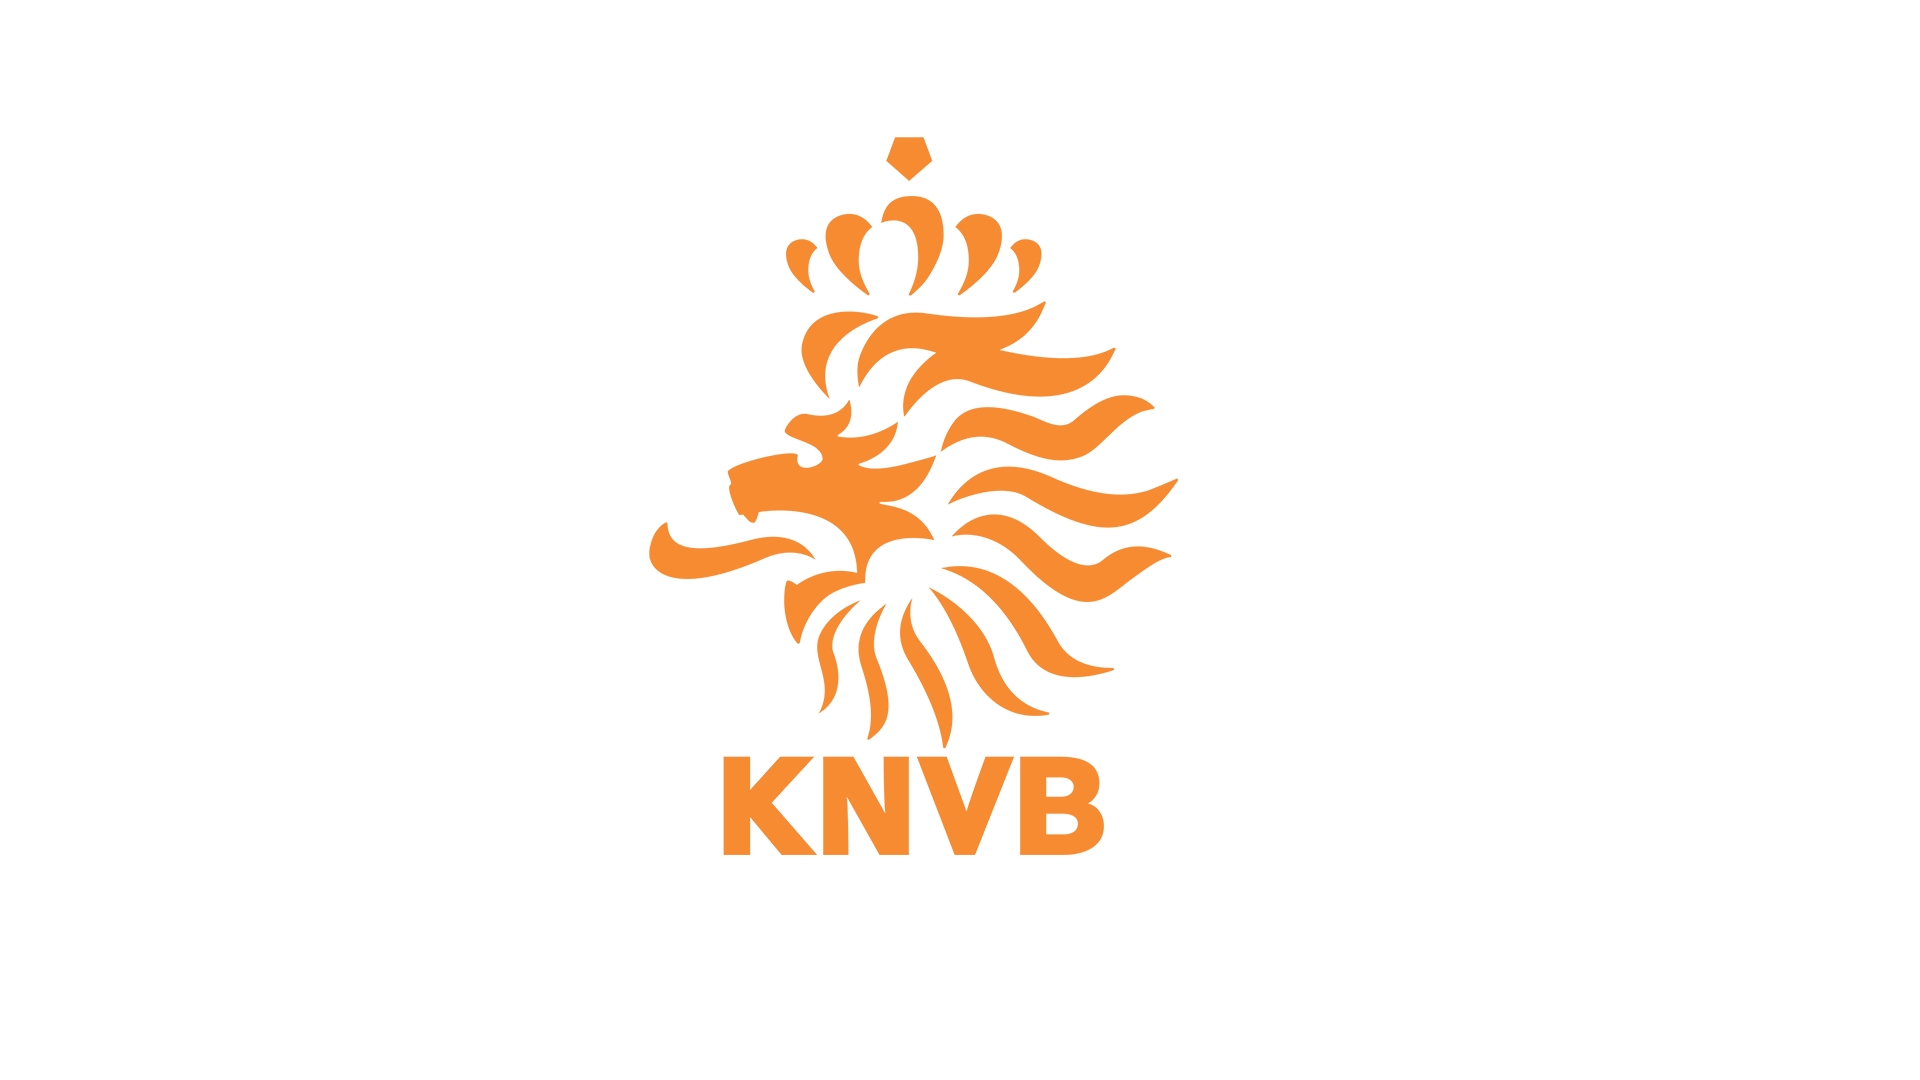 本届欧洲杯荷兰被谁淘汰 欧洲杯淘汰赛荷兰 欧洲杯单场胜负平 欧洲杯淘汰赛有平局 荷兰在世界杯近19场中对阵非欧国家保持不败，其战绩为13胜6平